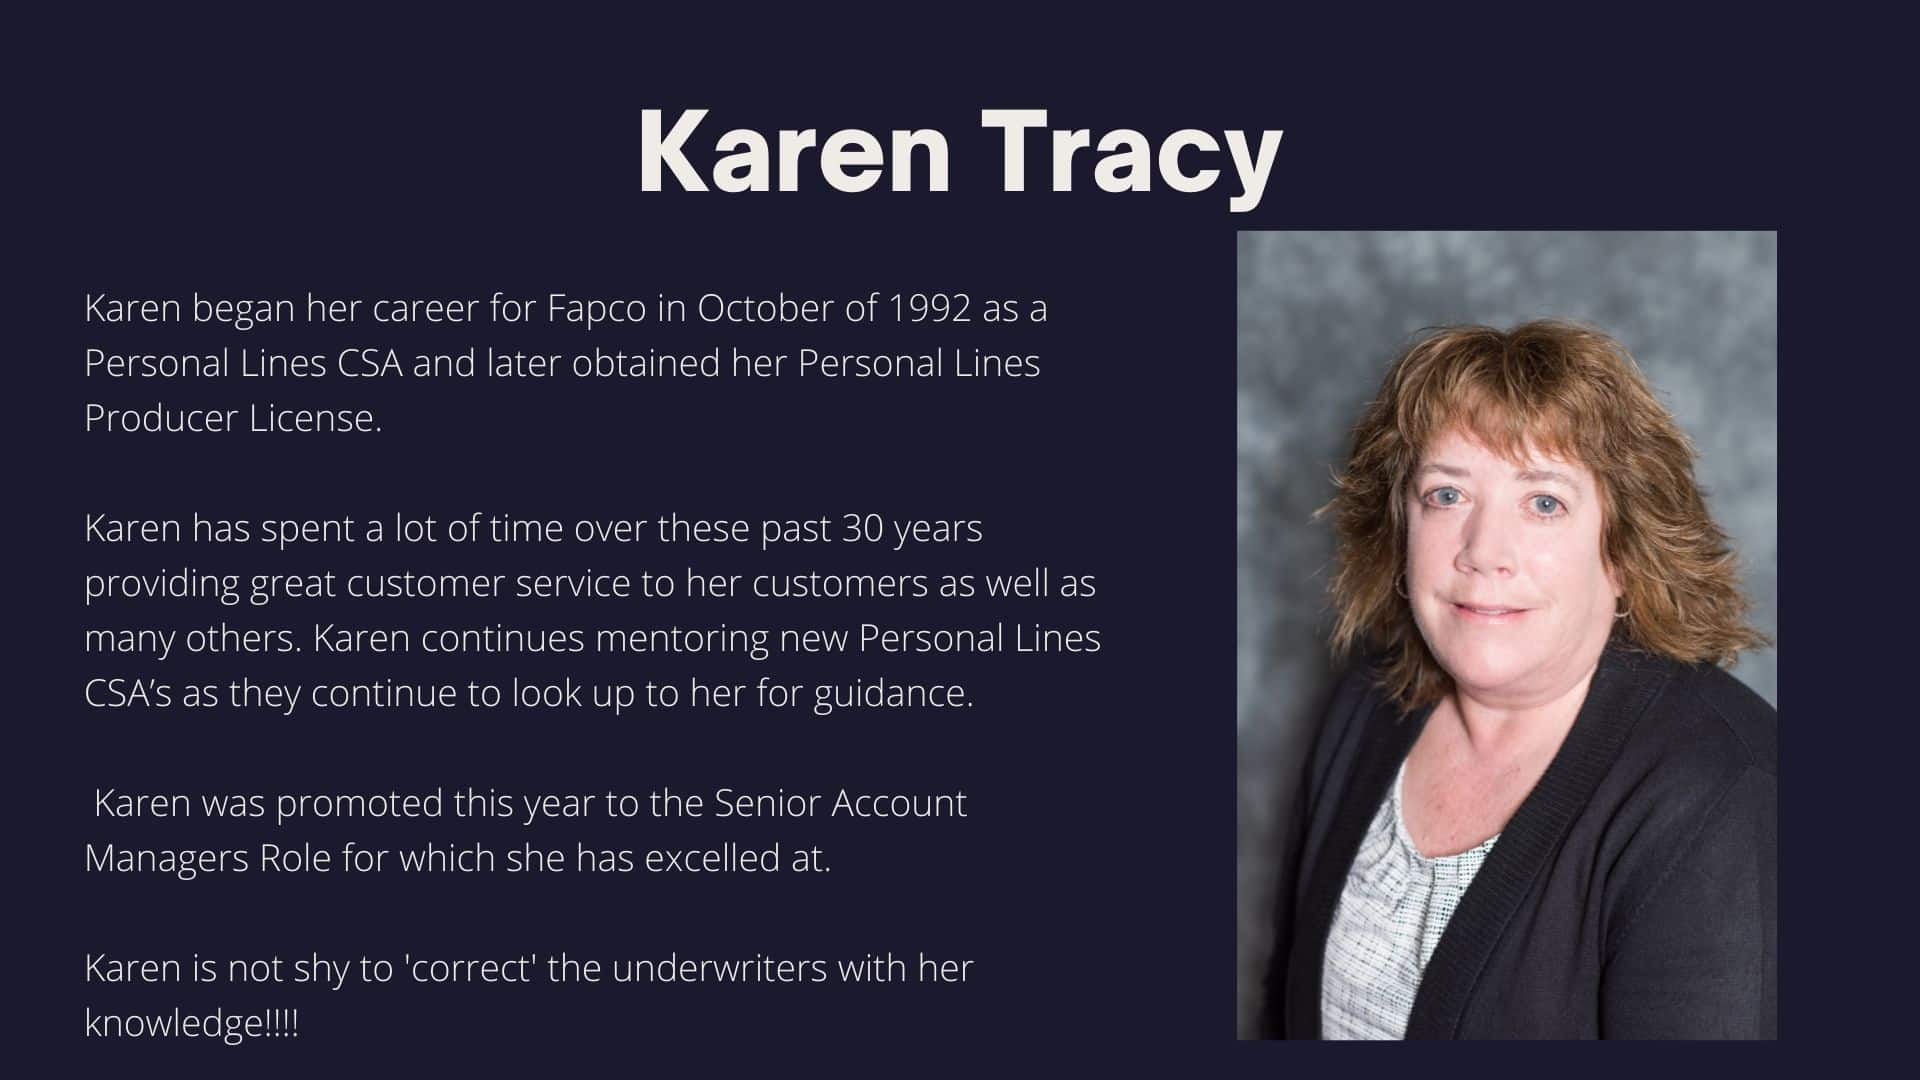 Karen Tracy 30 years